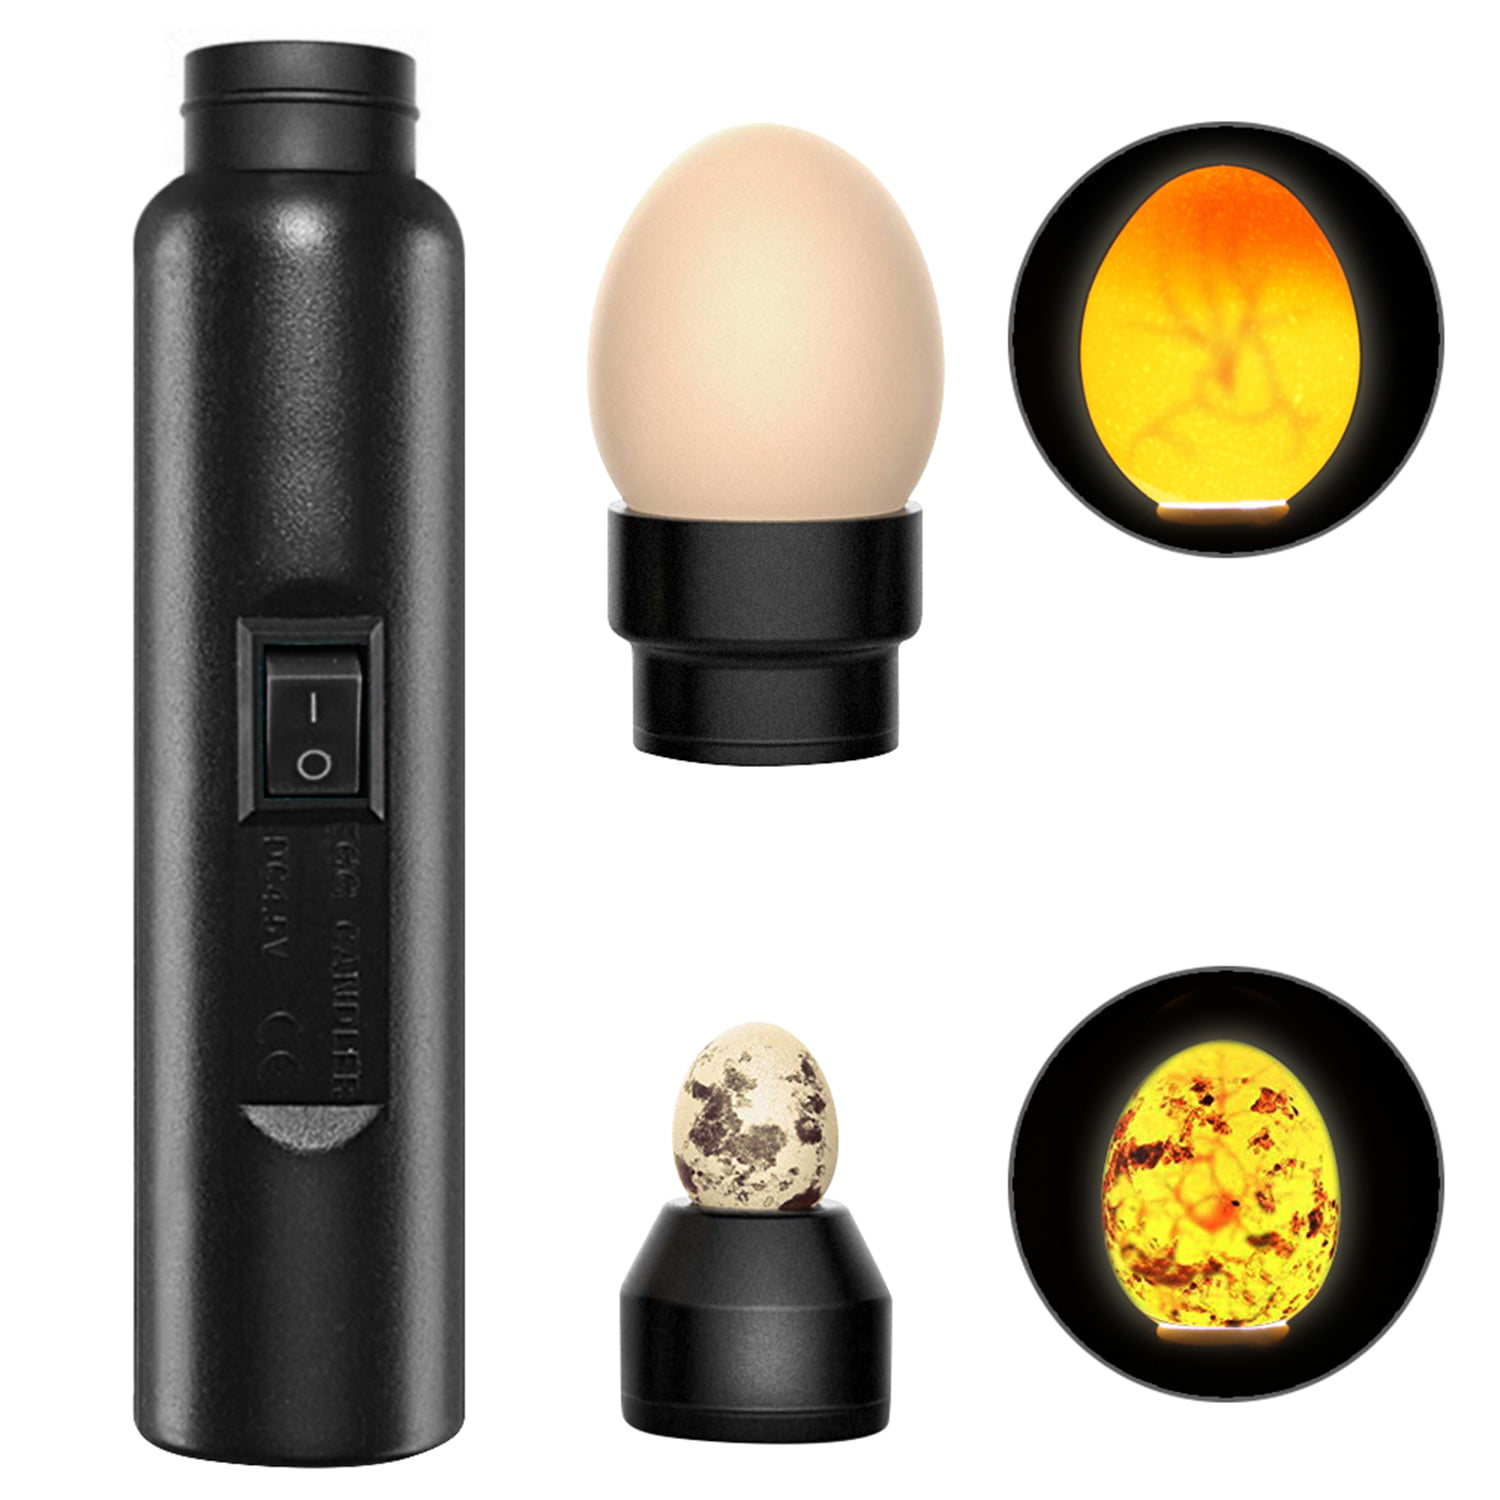 Baluue Light Egg Candler Candling Lamp Egg Incubator Egg Candler Tester LED Light Poultry Bright Flashlight Candling Lamp Incubator 